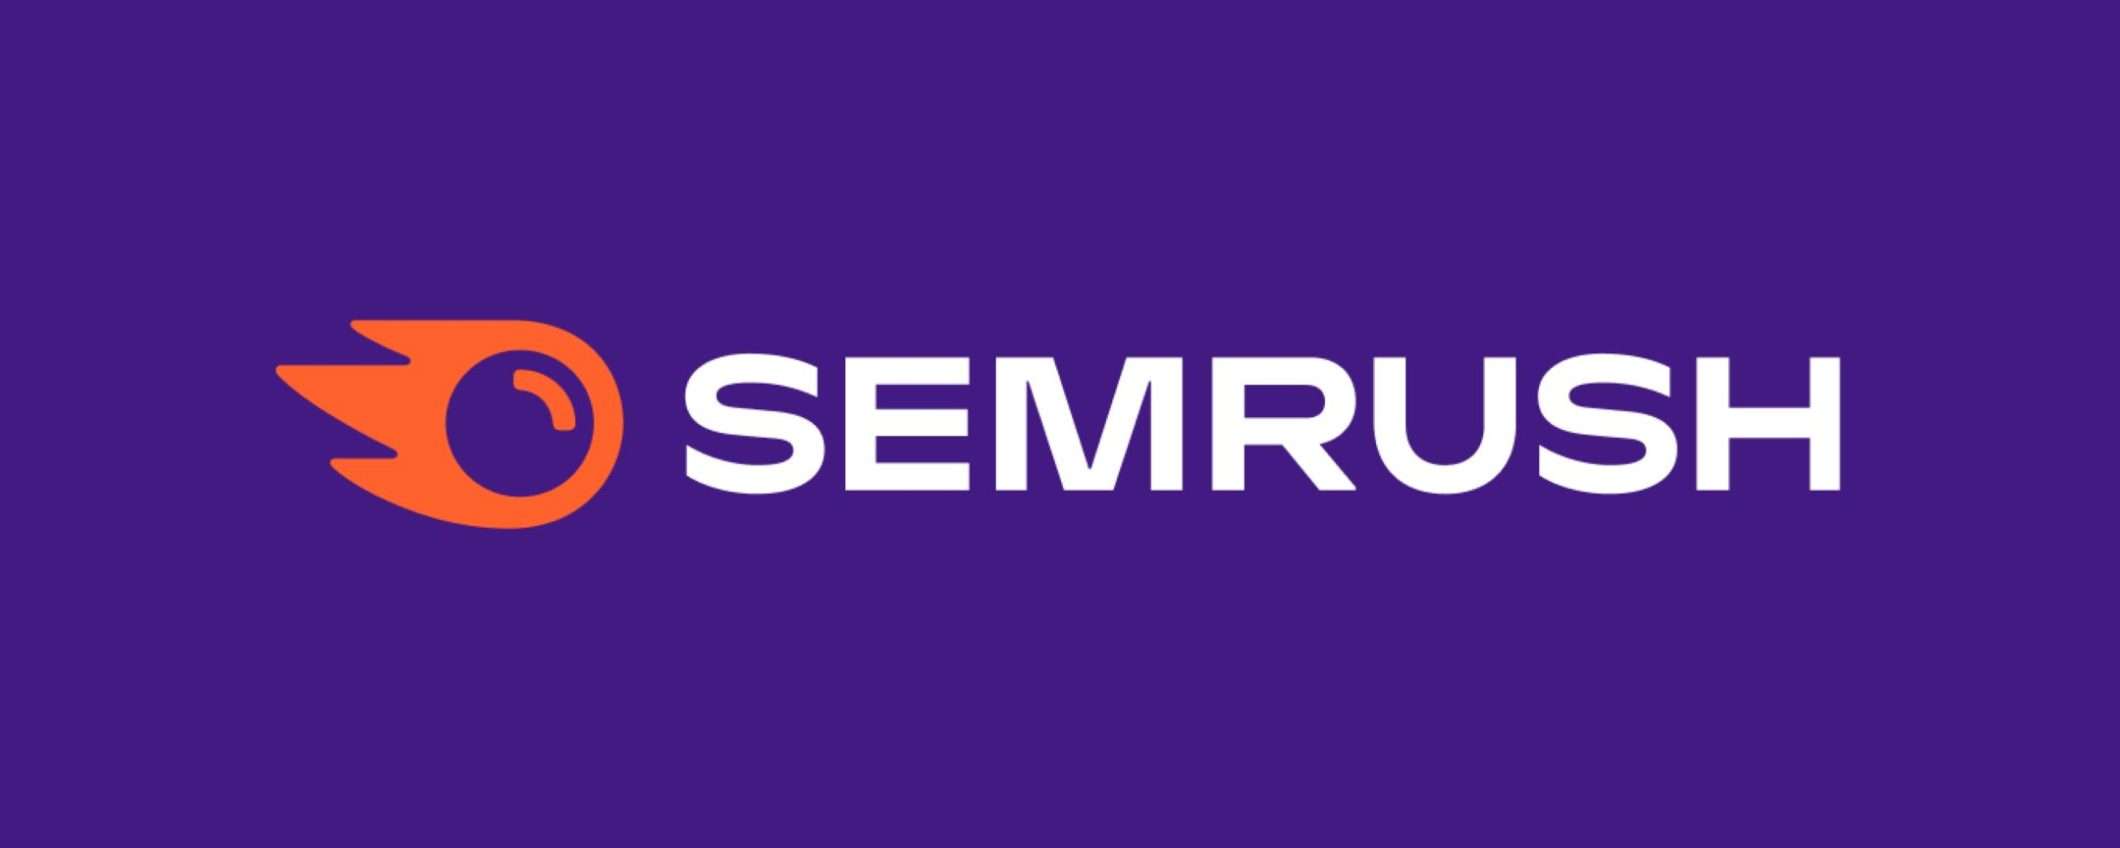 Semrush: fai volare il tuo sito con i super poteri della SEO